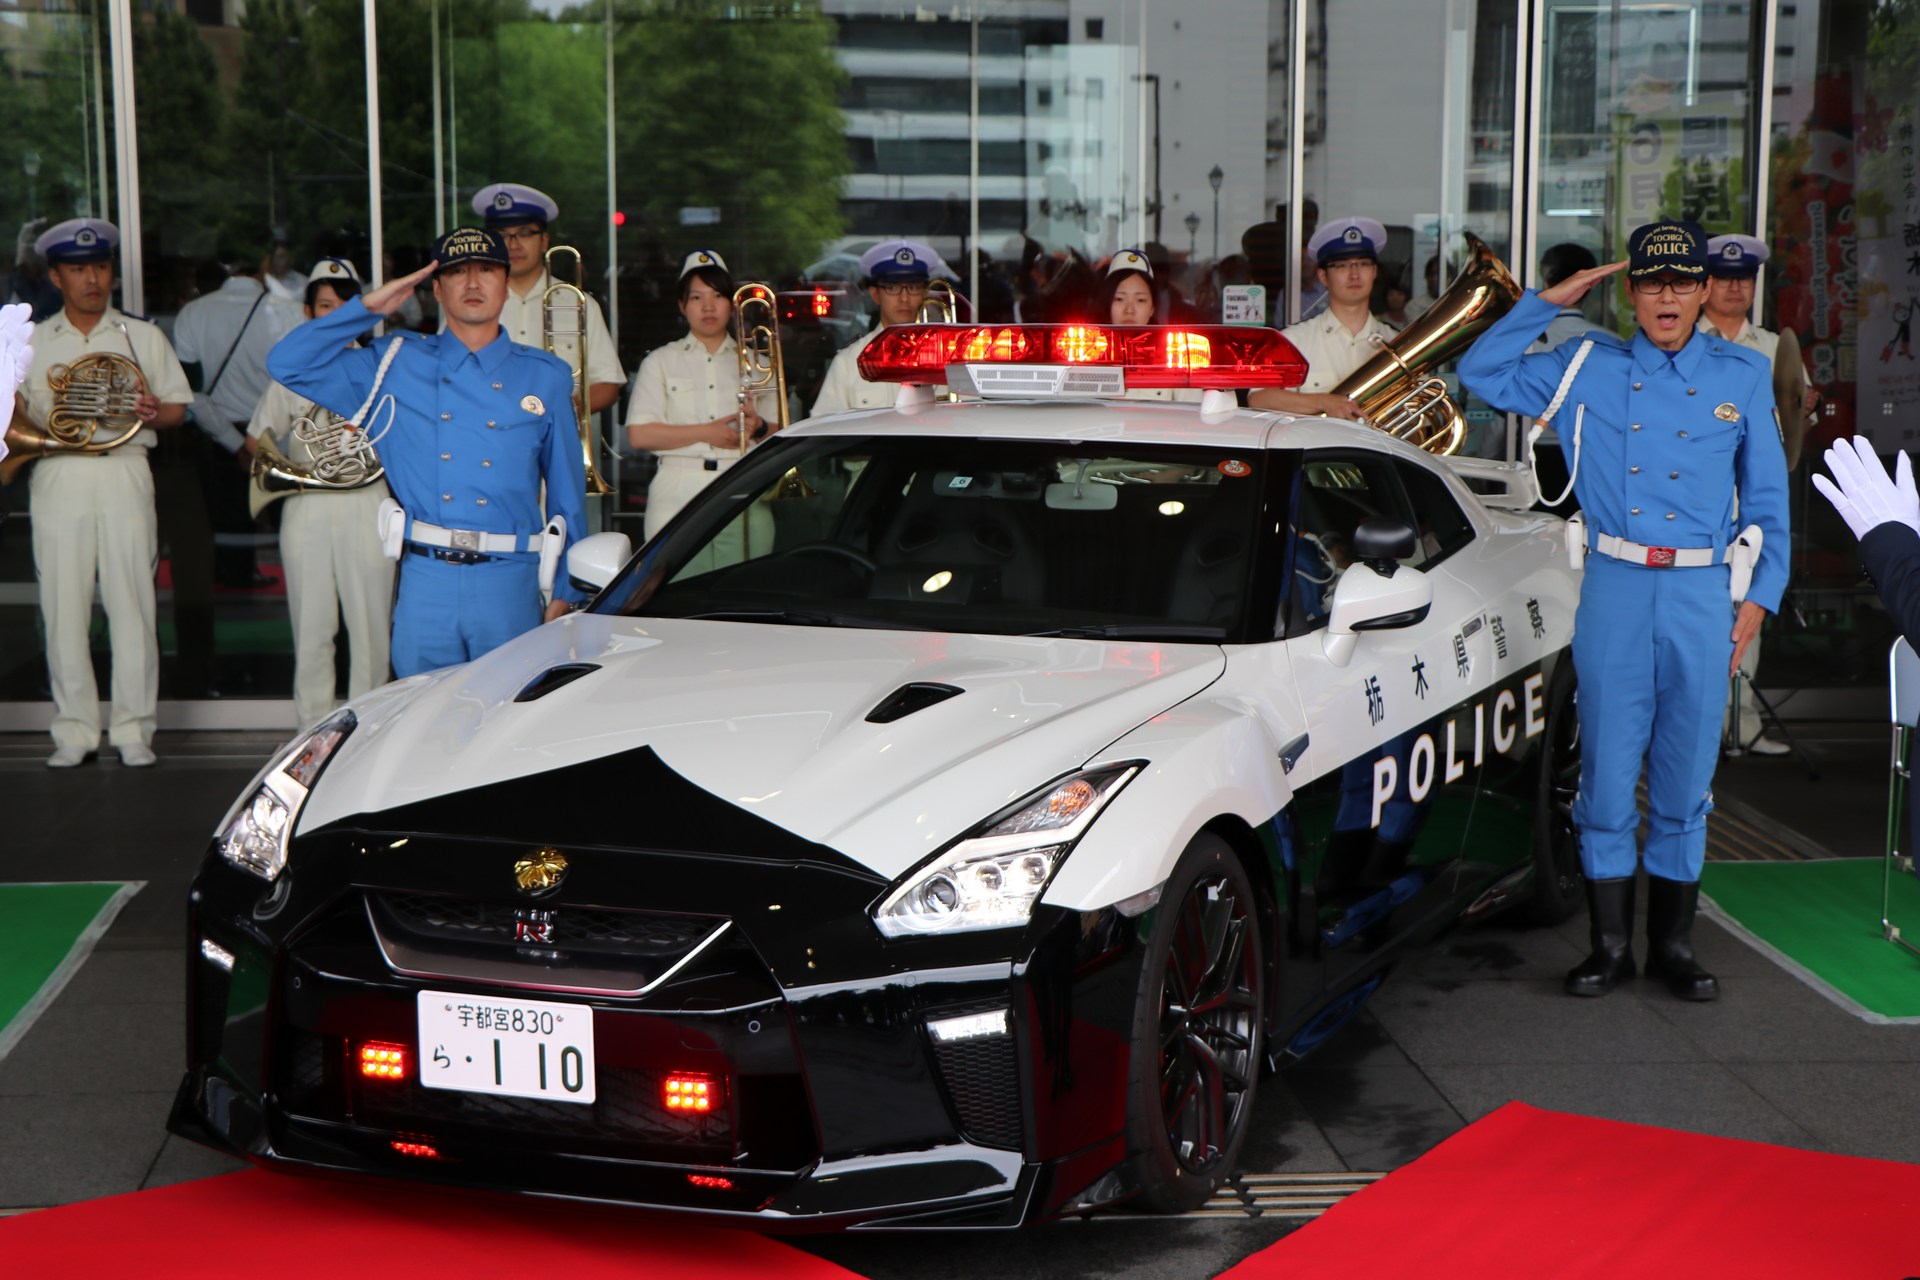 "بالصور" نيسان GT-R تدخل الخدمة رسميا بأسطول الشرطة اليابانية 4